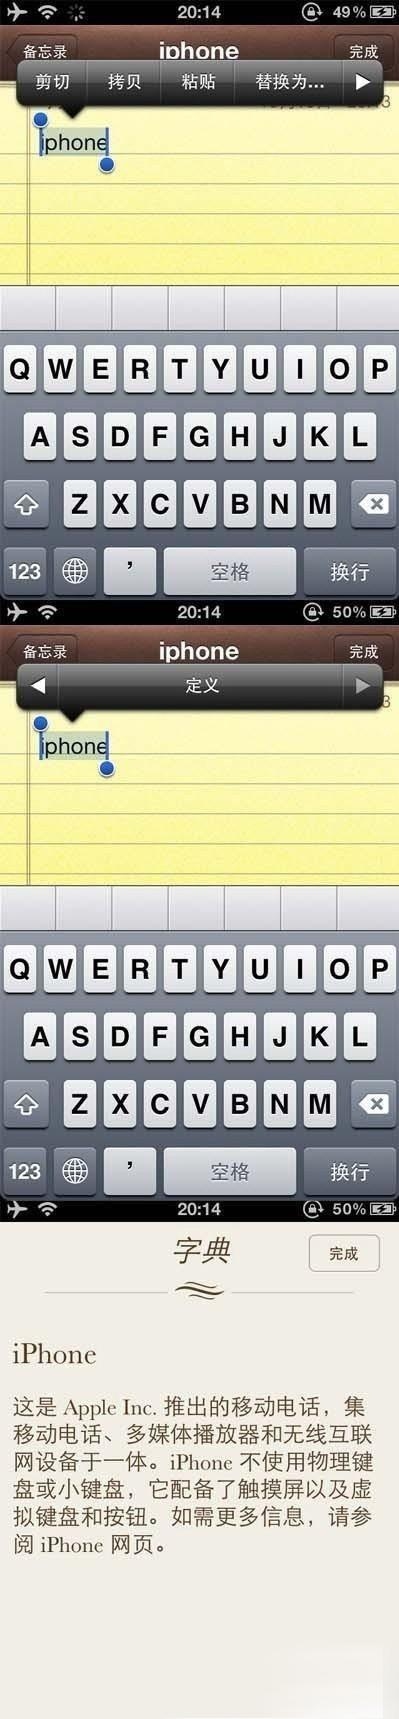 iphone4s字典功能使用教程  